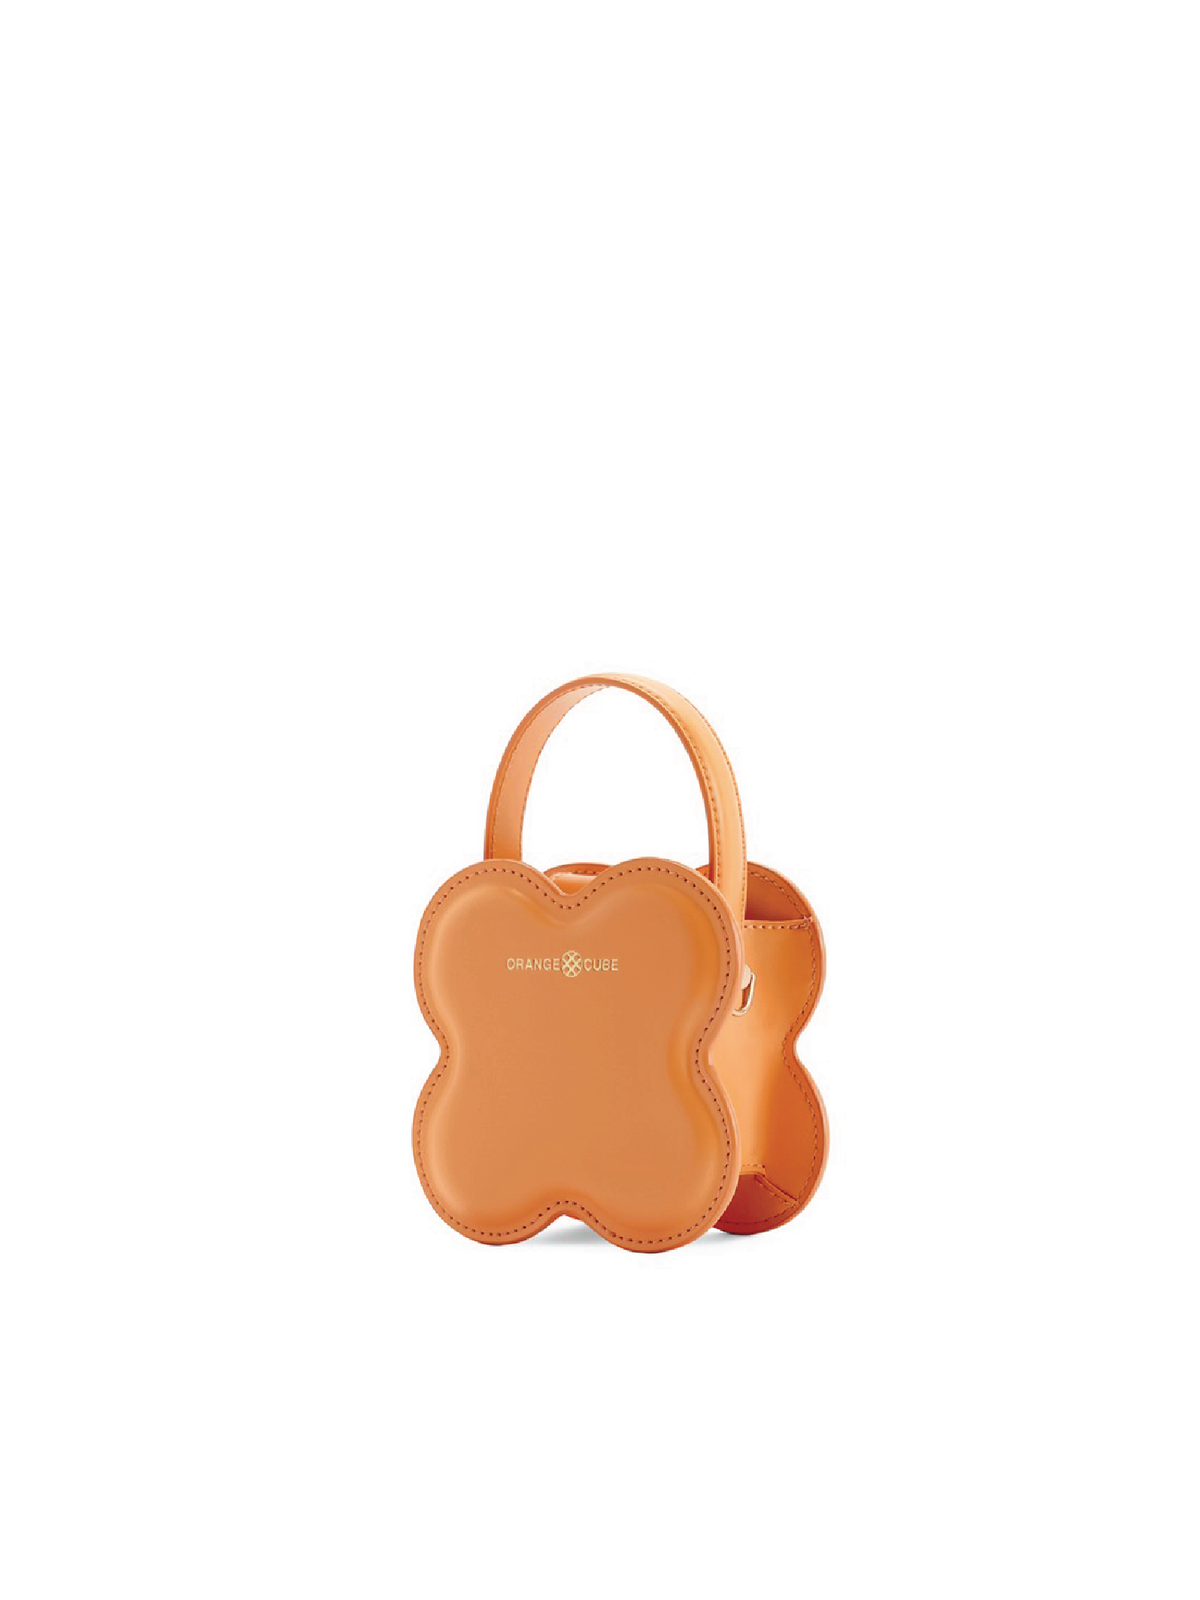 Lucky Clover Handbag - Orange (Small)